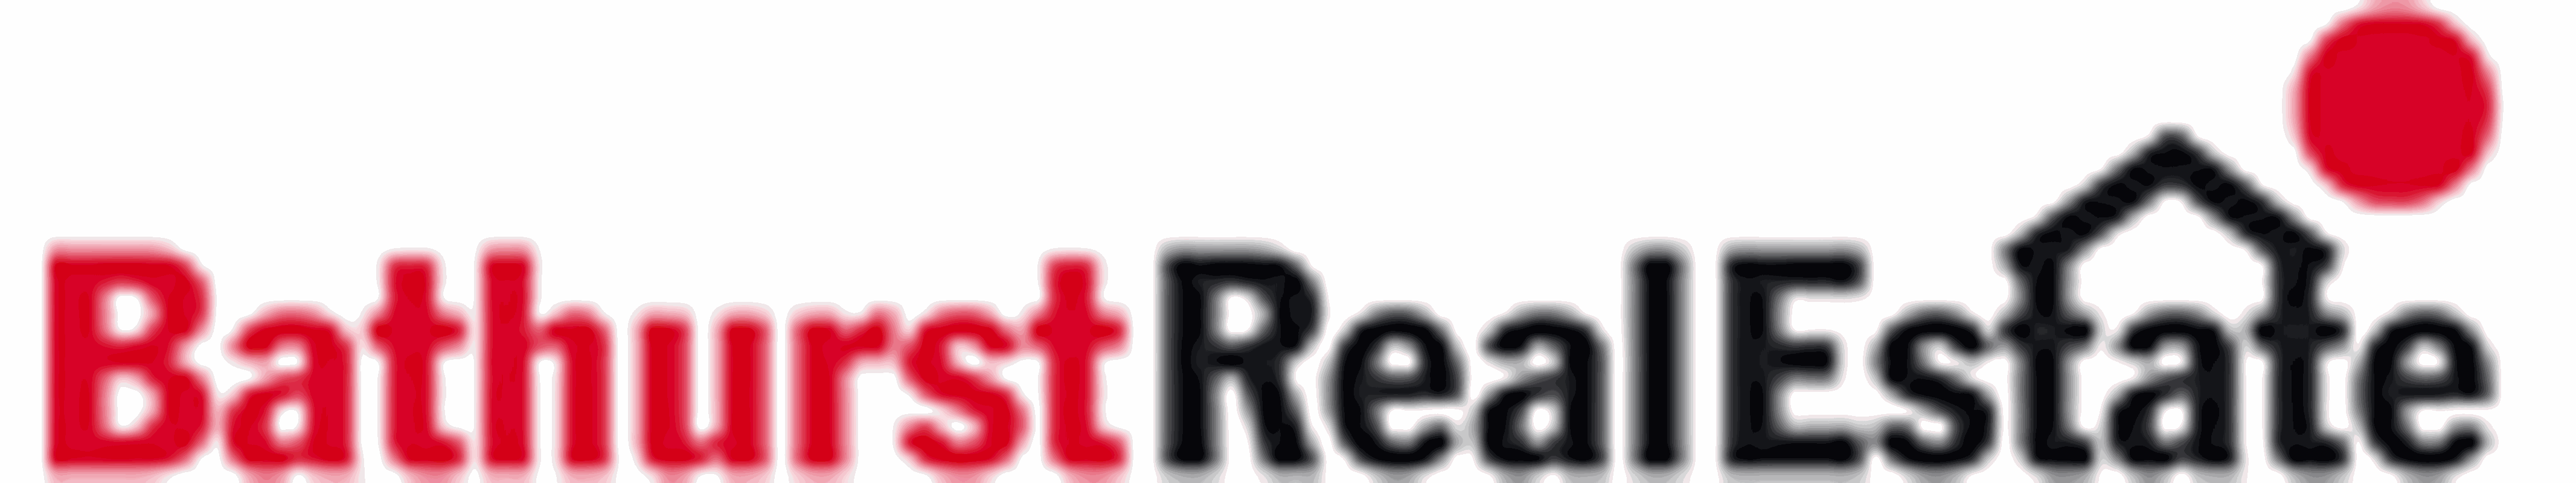 Bathurst Real Estate - STAR MEDIA PLATINUM - YouTube